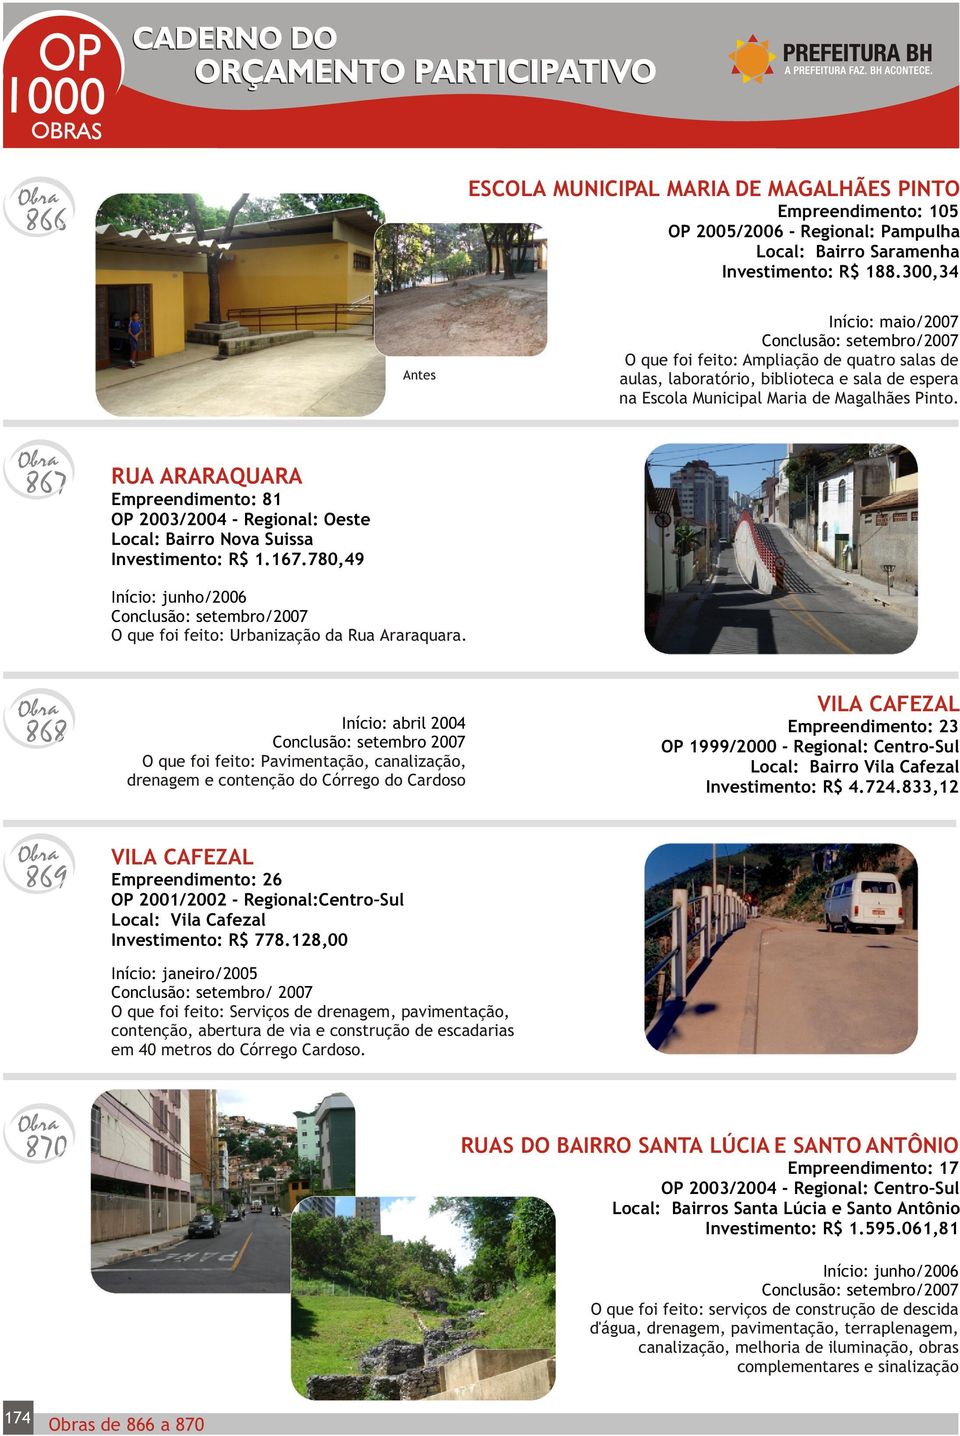 867 RUA ARARAQUARA Empreendimento: 81 OP 2003/2004 - Regional: Oeste Local: Bairro Nova Suissa Investimento: R$ 1.167.780,49 O que foi feito: Urbanização da Rua Araraquara.